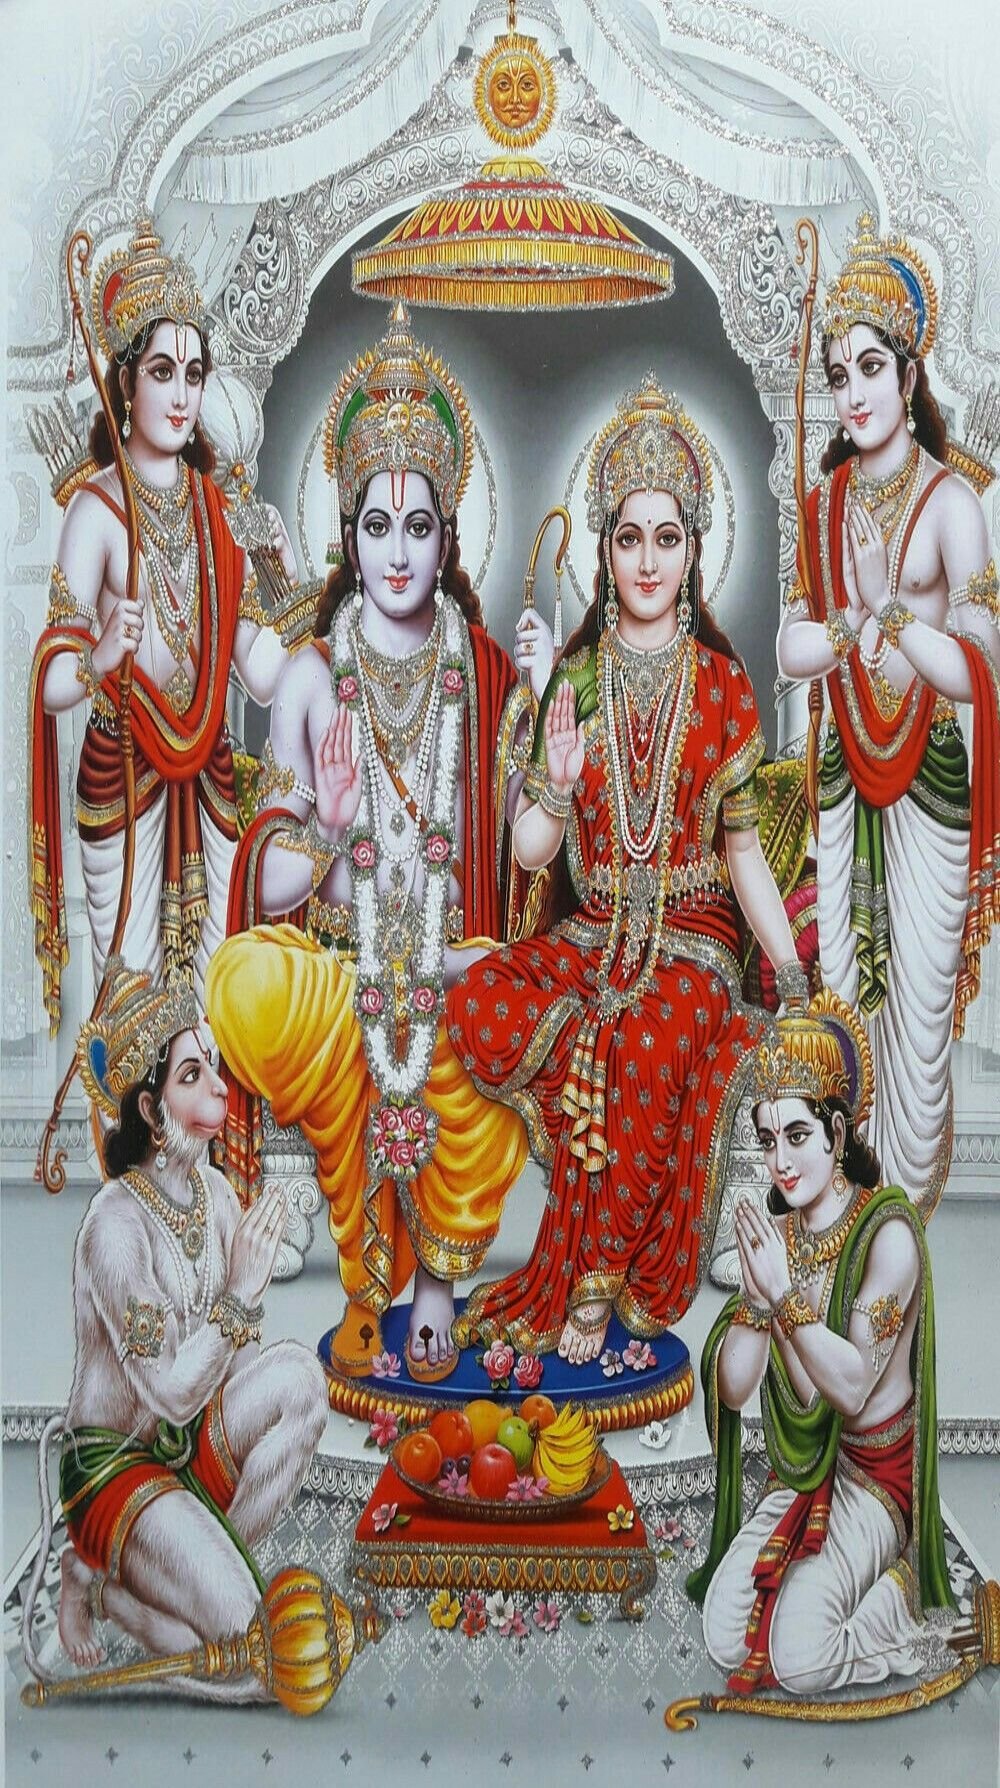 Shri Ram Sita